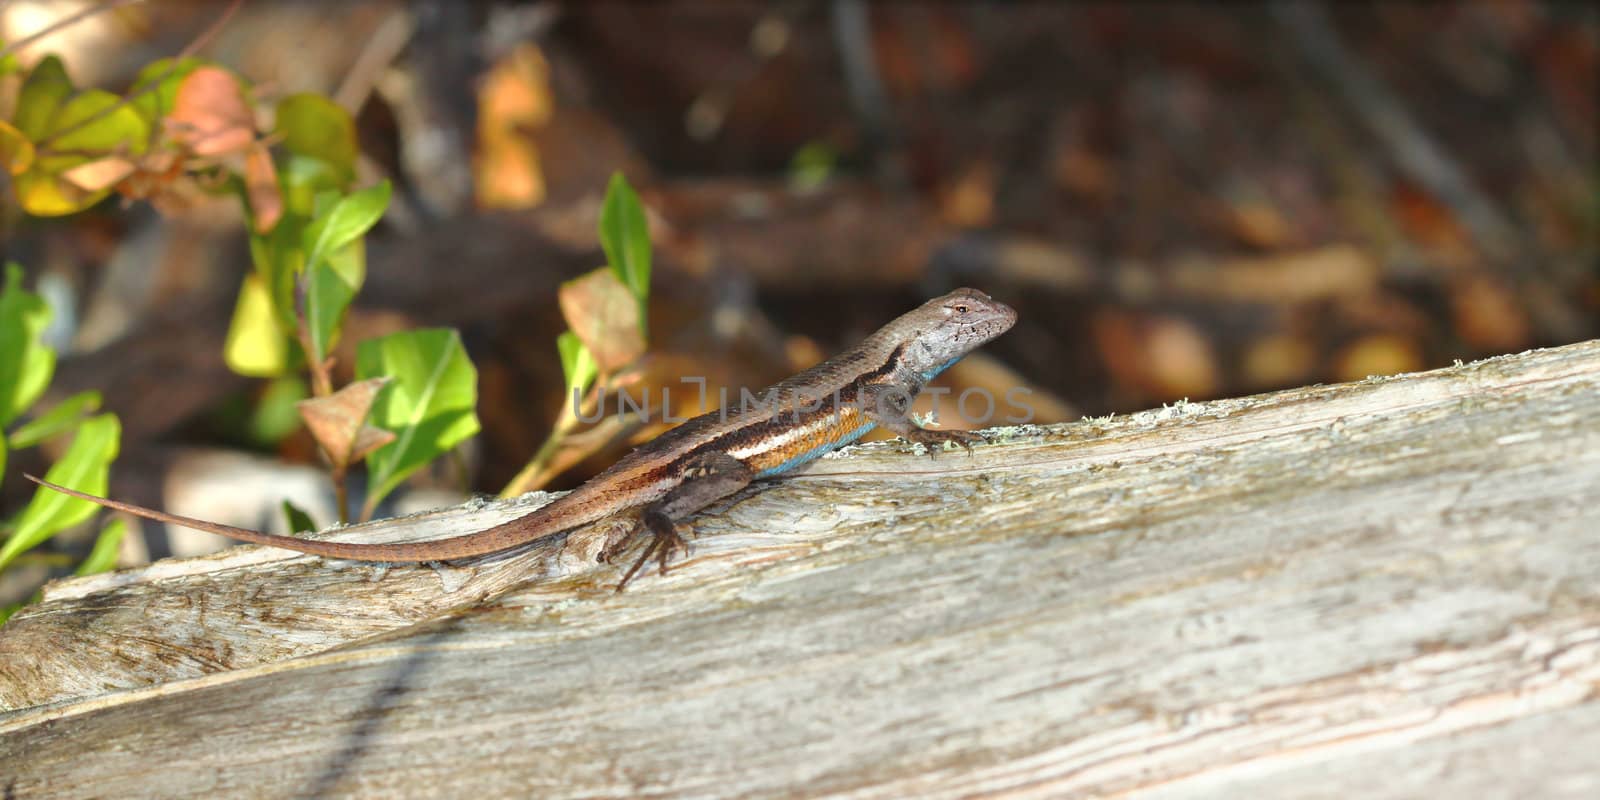 Florida Scrub Lizard (Sceloporus woodi) by Wirepec